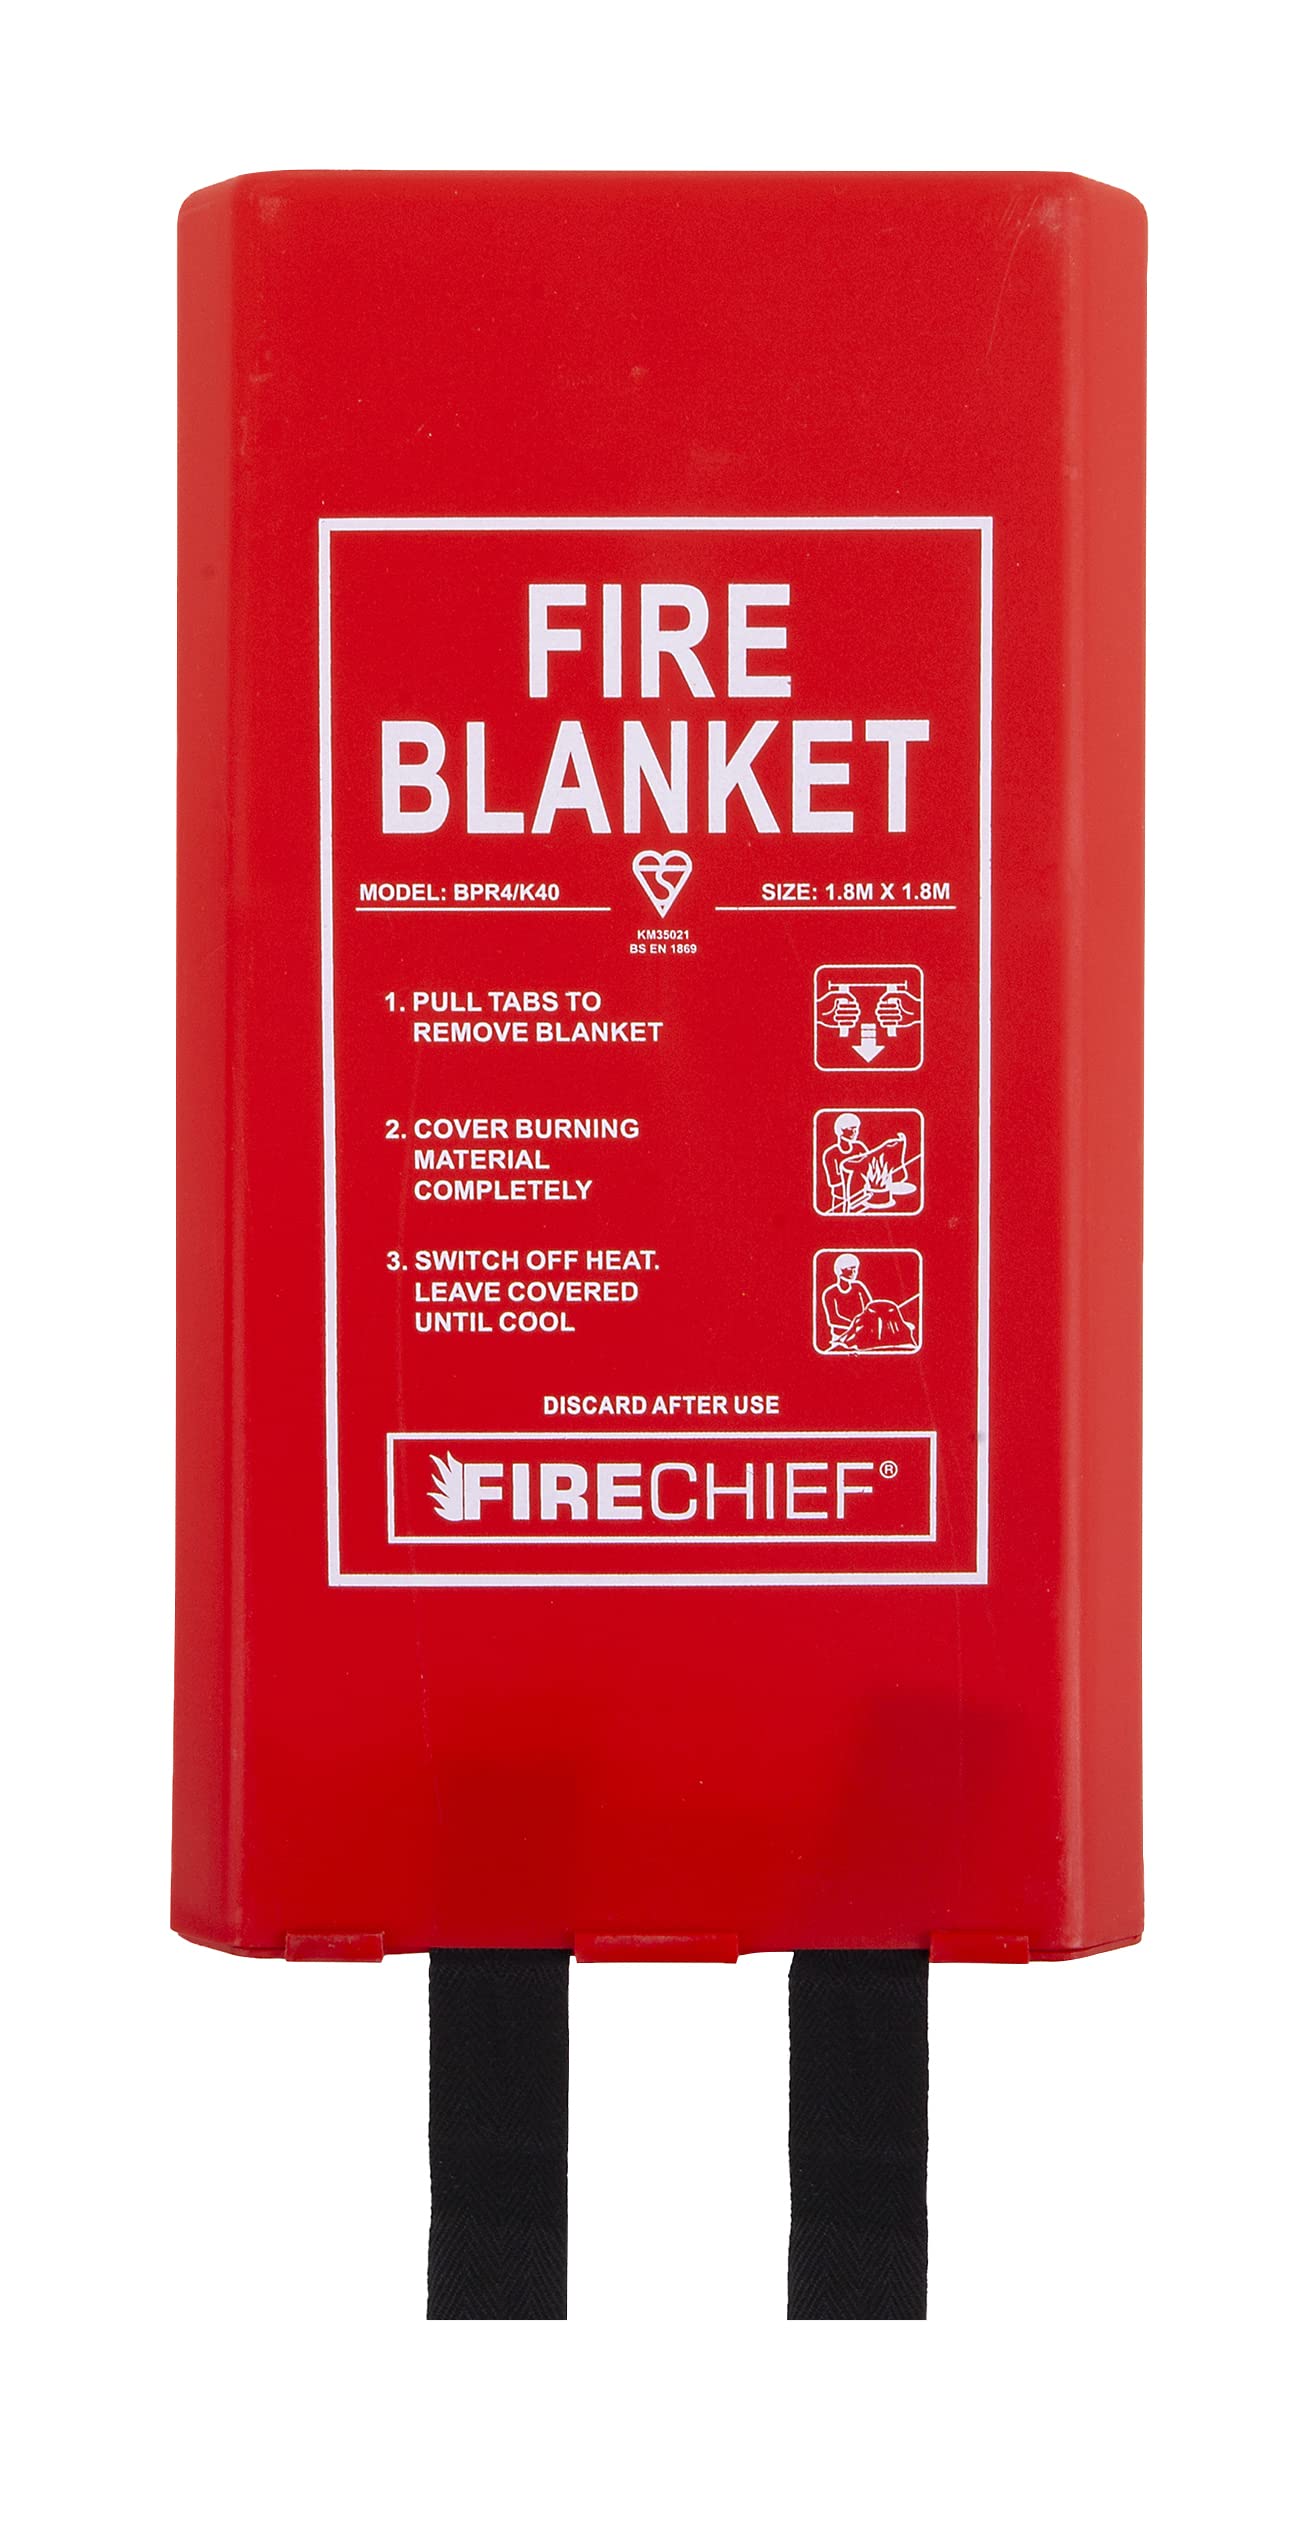 Firechief BPR4/K40 Feuerlöschdecke mit Gütesiegel, kommerzielle Feuerlöschdecke (1,8 m x 1,8 m) mit robustem Kunststoffgehäuse, geeignet für den Einsatz zu Hause, am Arbeitsplatz und auf einer Person